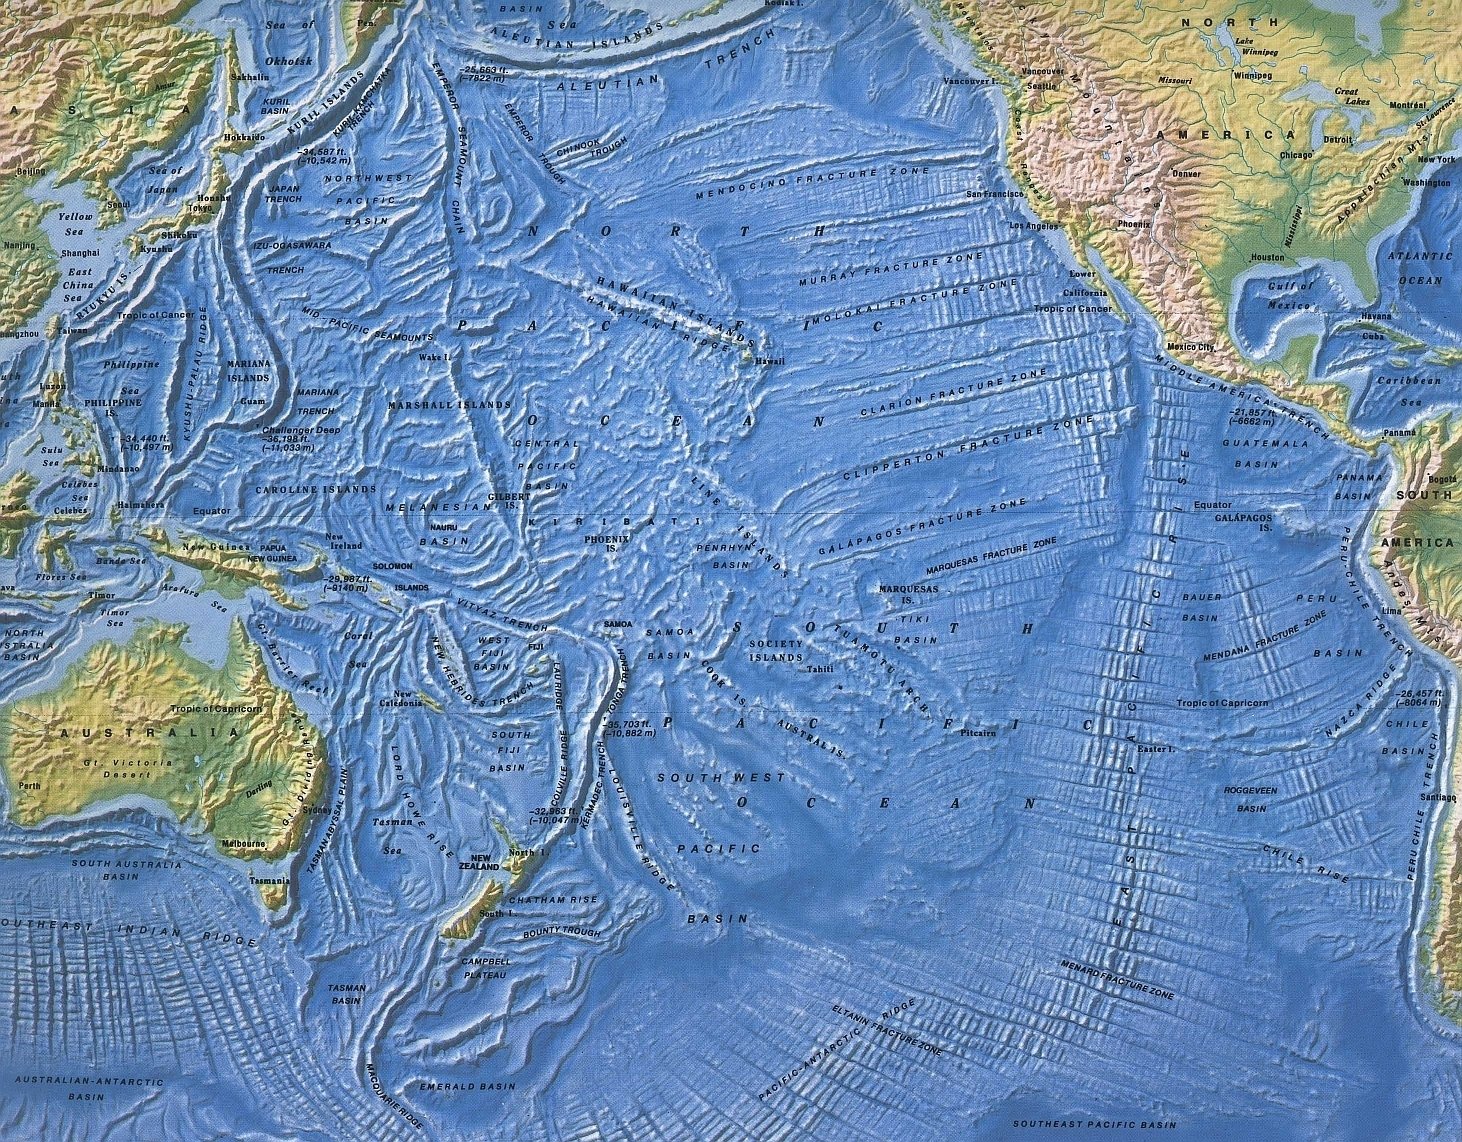 Восточная часть тихого океана. Карта рельефа Тихого океана. Карта рельефа дна Тихого океана. Рельеф дна Тихого океана. Рельеф дна океана Тихого океана карта.